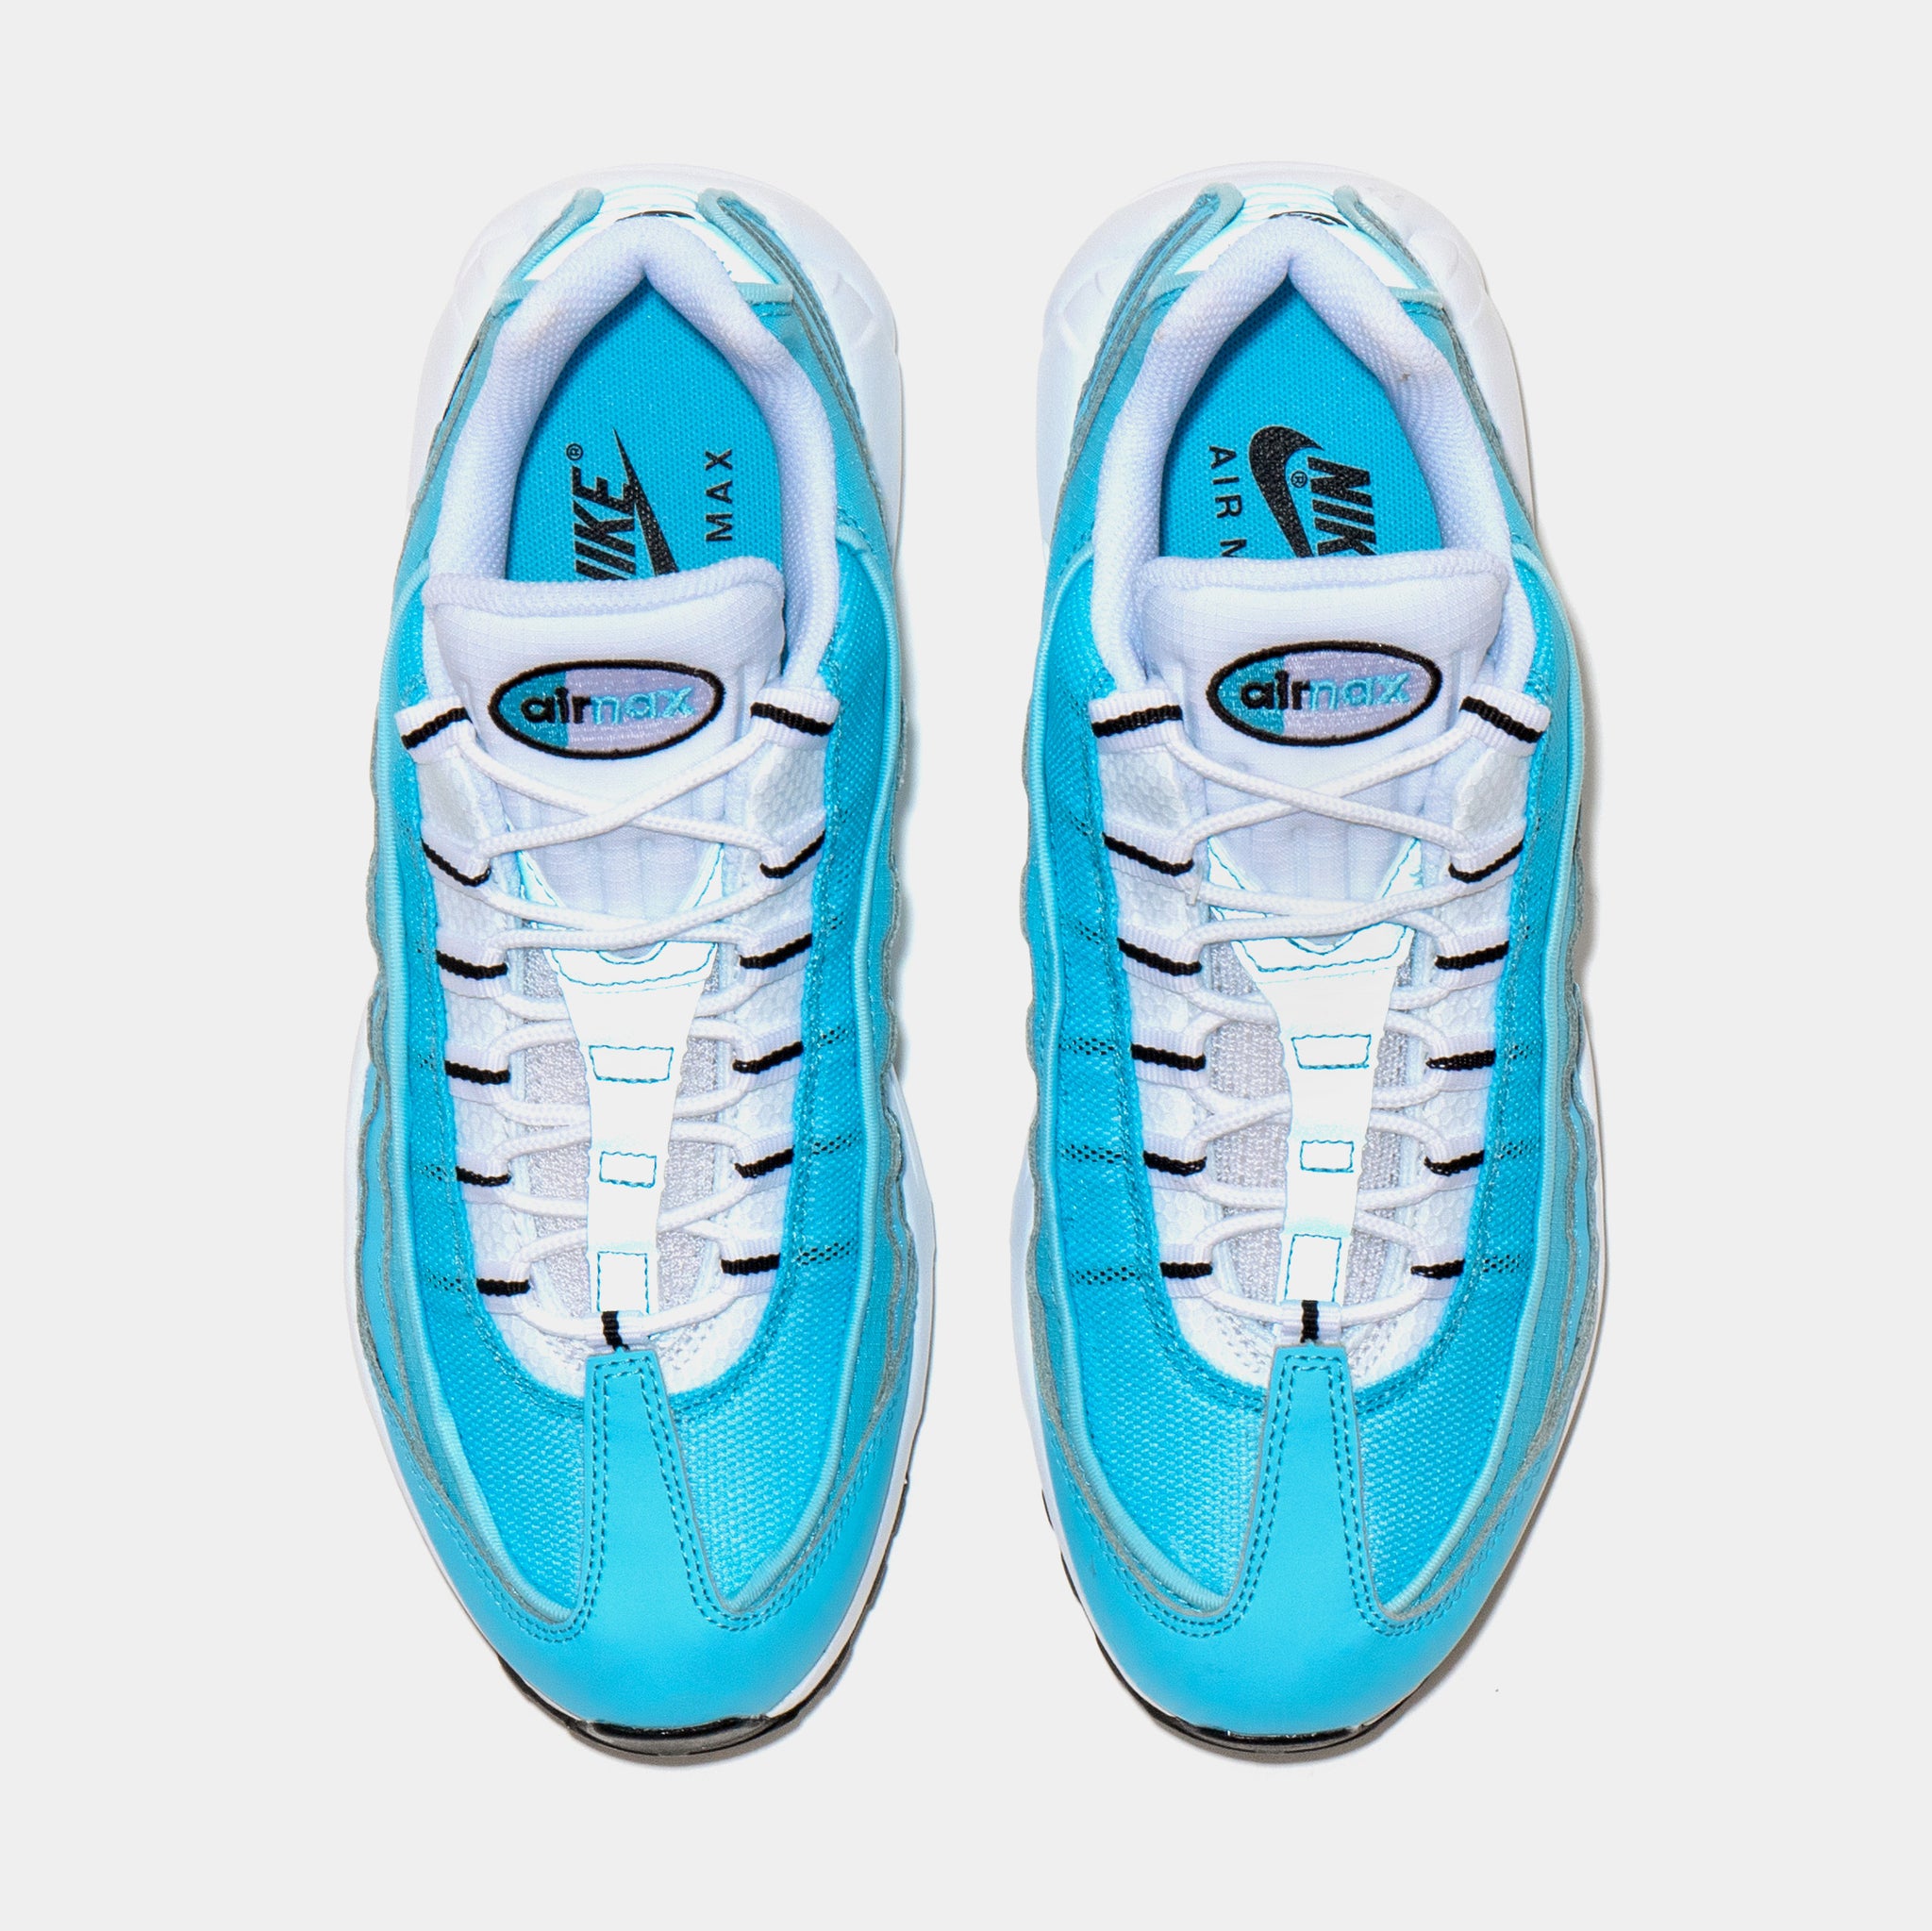 ovn Jeg tror, ​​jeg er syg Mastery Nike Air Max 95 University Blue Mens Running Shoes Blue White DZ4395-400 –  Shoe Palace